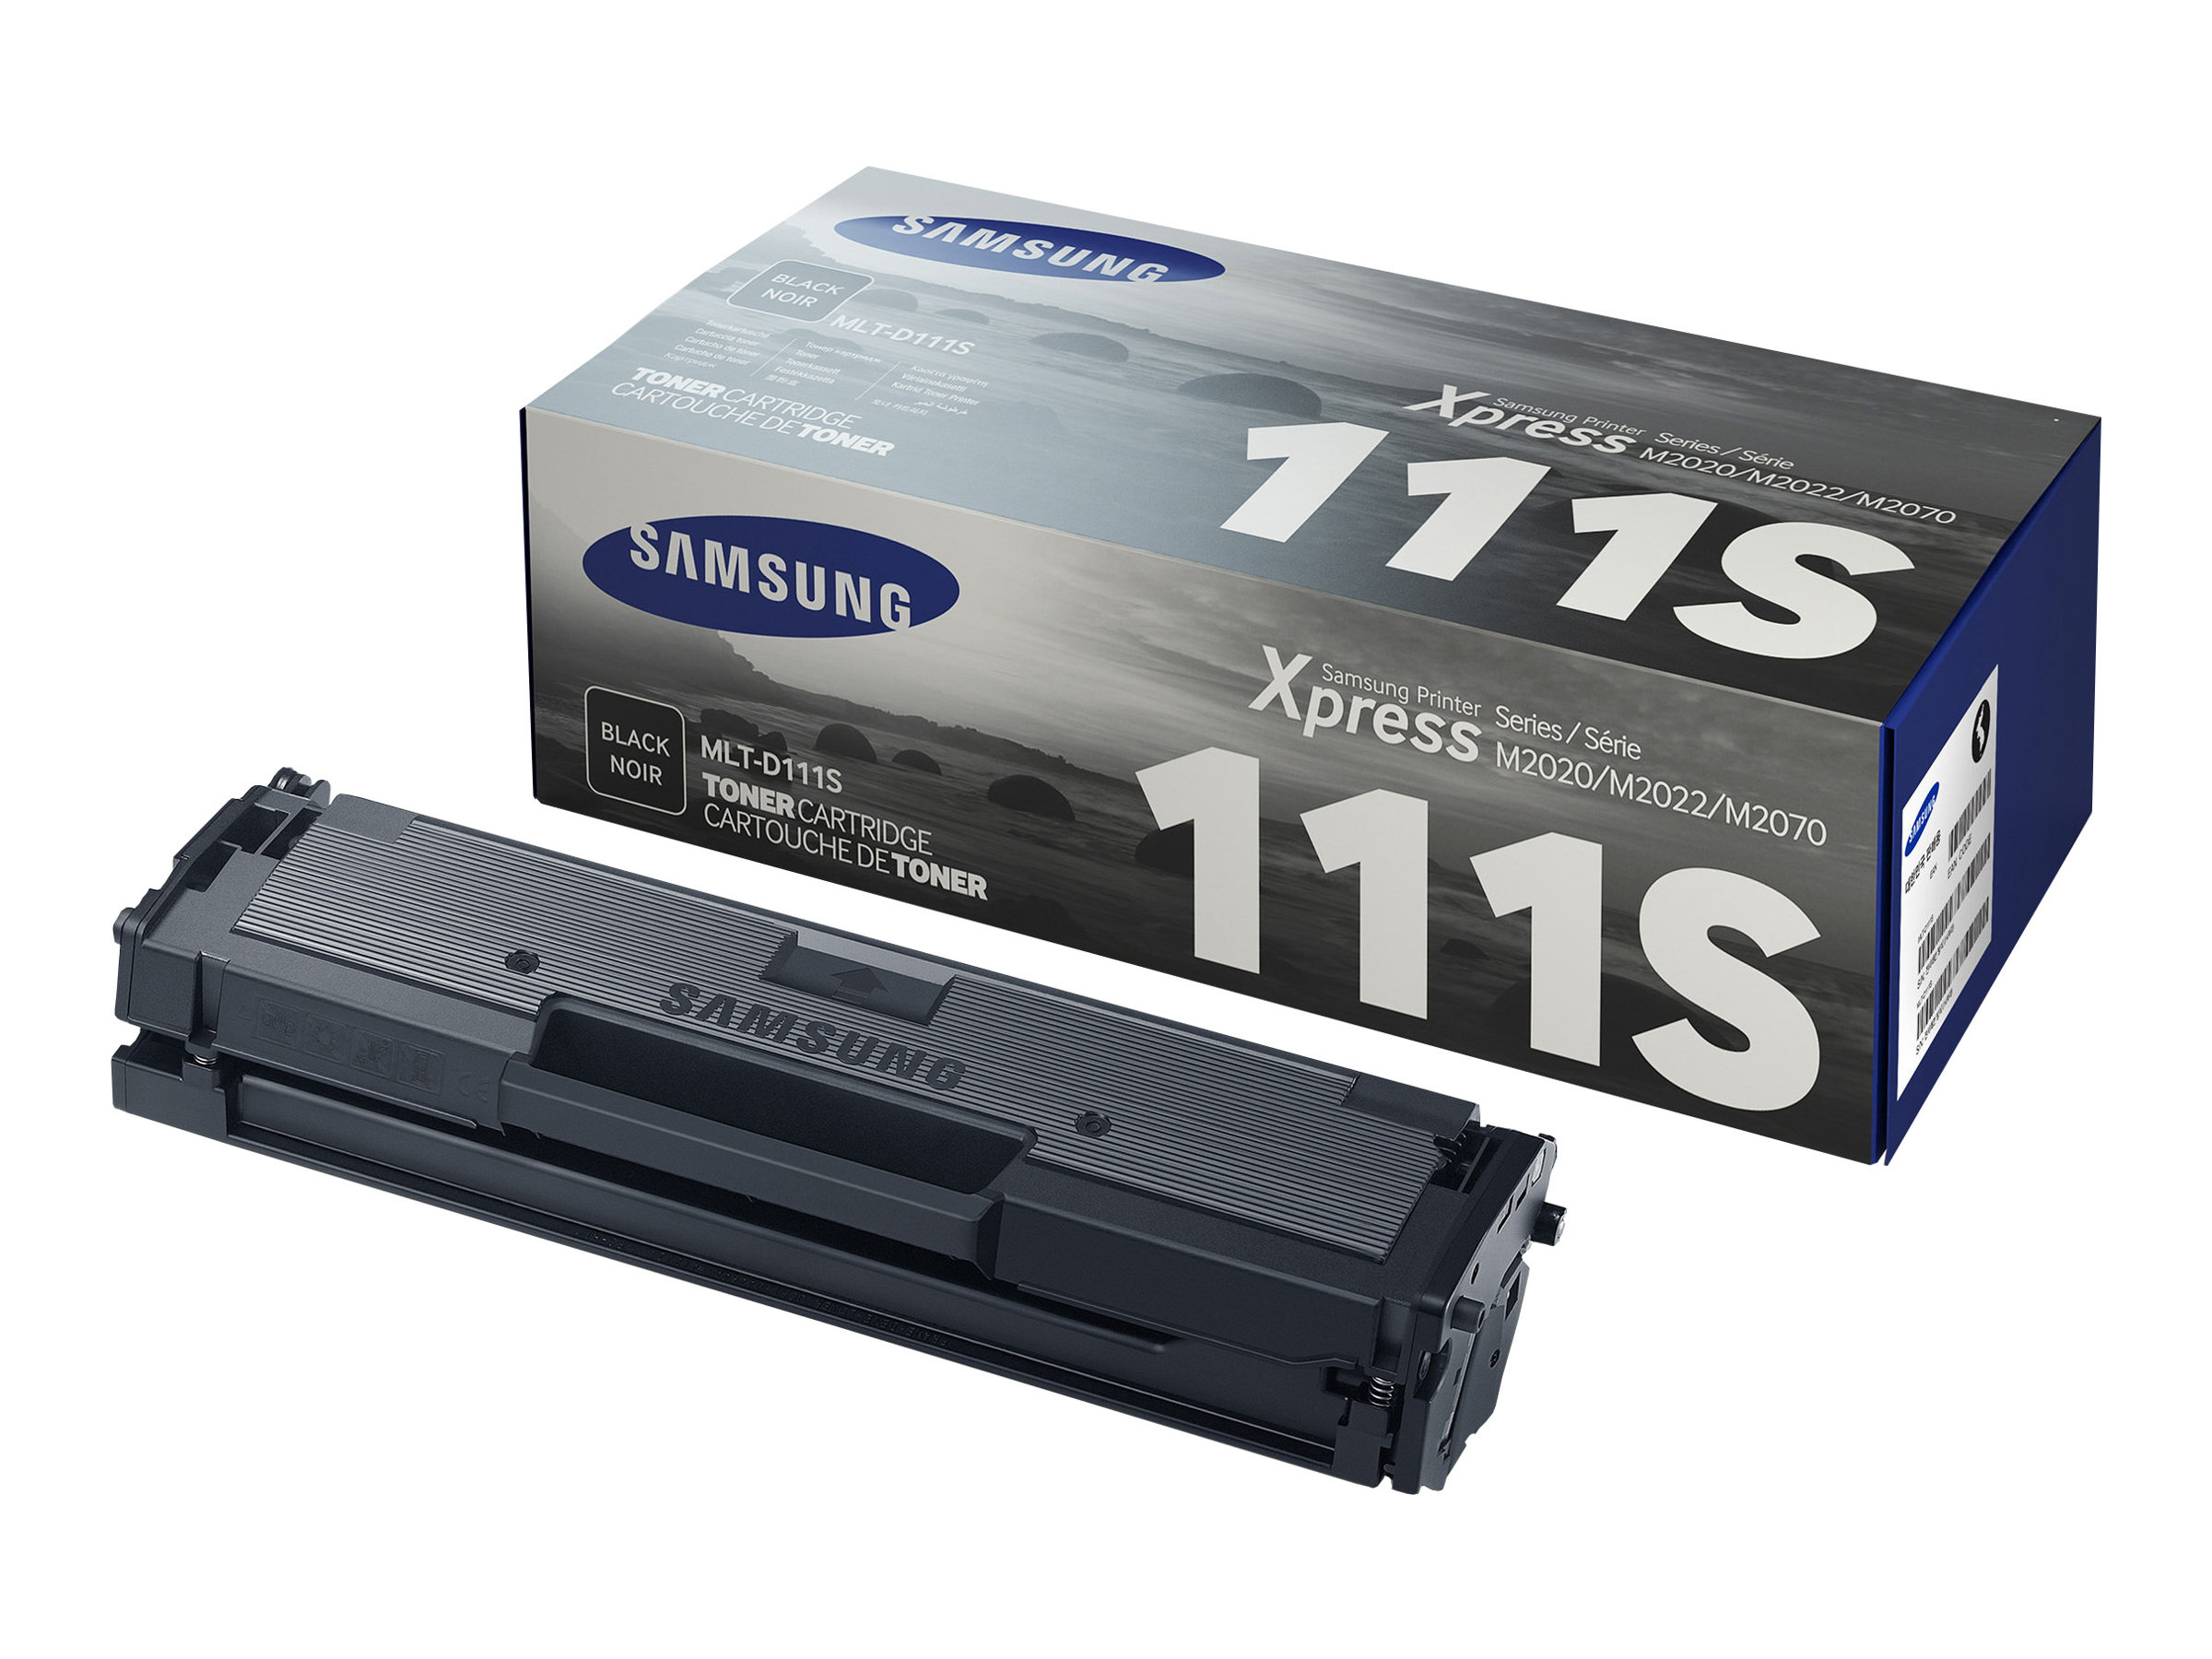 Samsung MLT-D111S - Noir - original - cartouche de toner (SU810A) - pour Xpress SL-M2023, M2027, M2029, M2060, M2070, M2071, M2073, M2074, M2077, M2078, M2079 - SU810A - Cartouches de toner Samsung